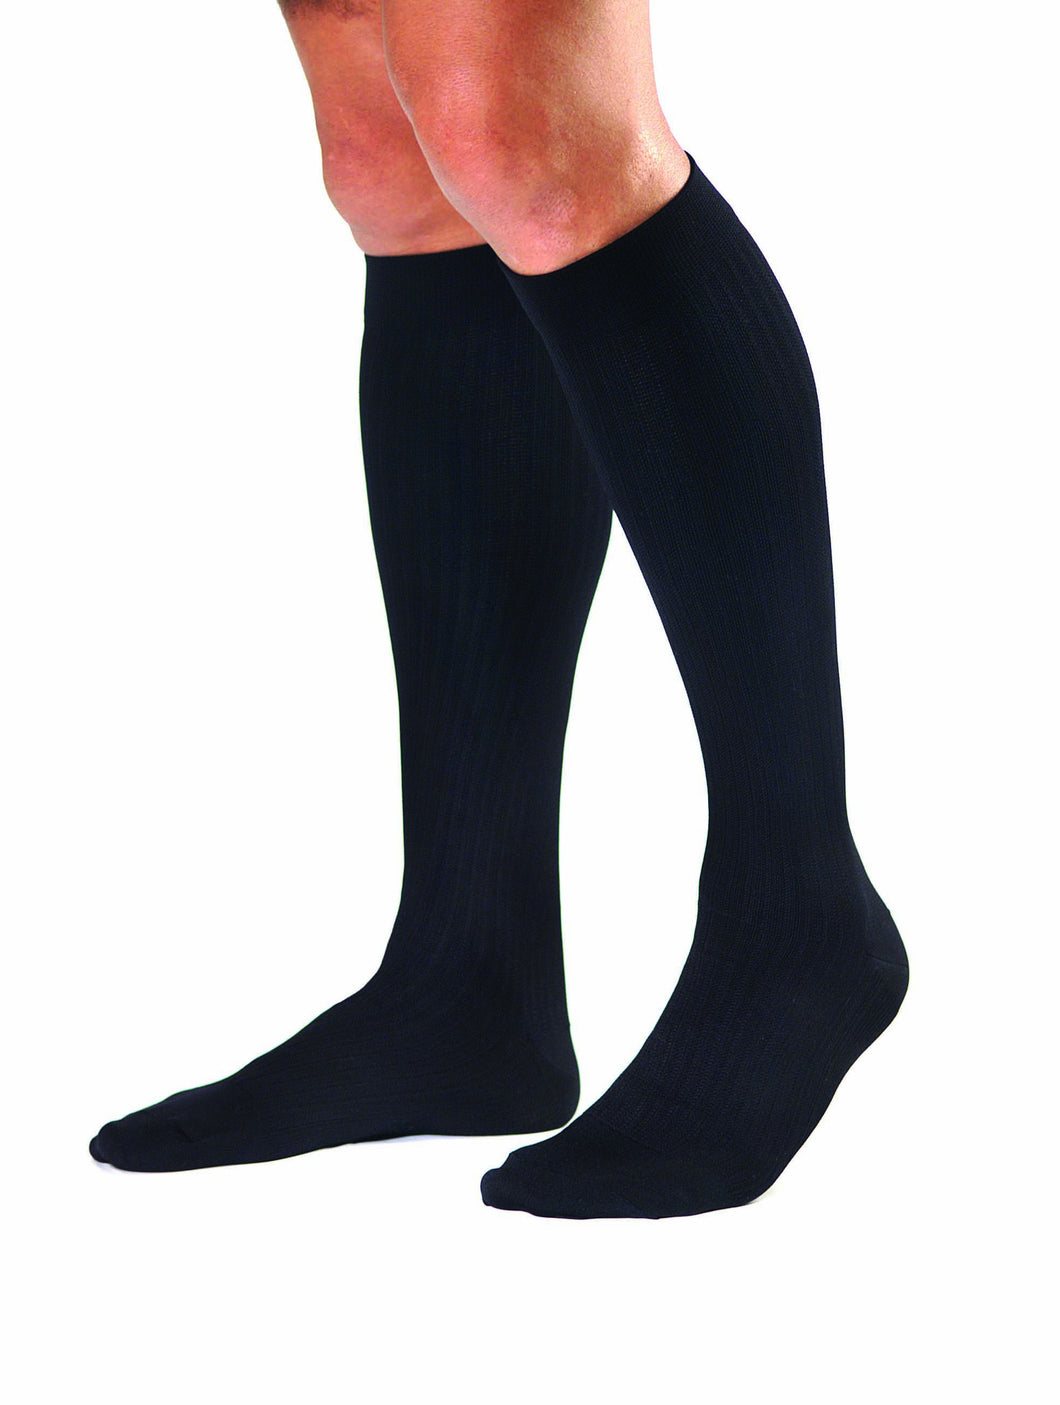 Jobst Men's Dress | Knee High Socks | Closed Toe | 8-15 mmHg